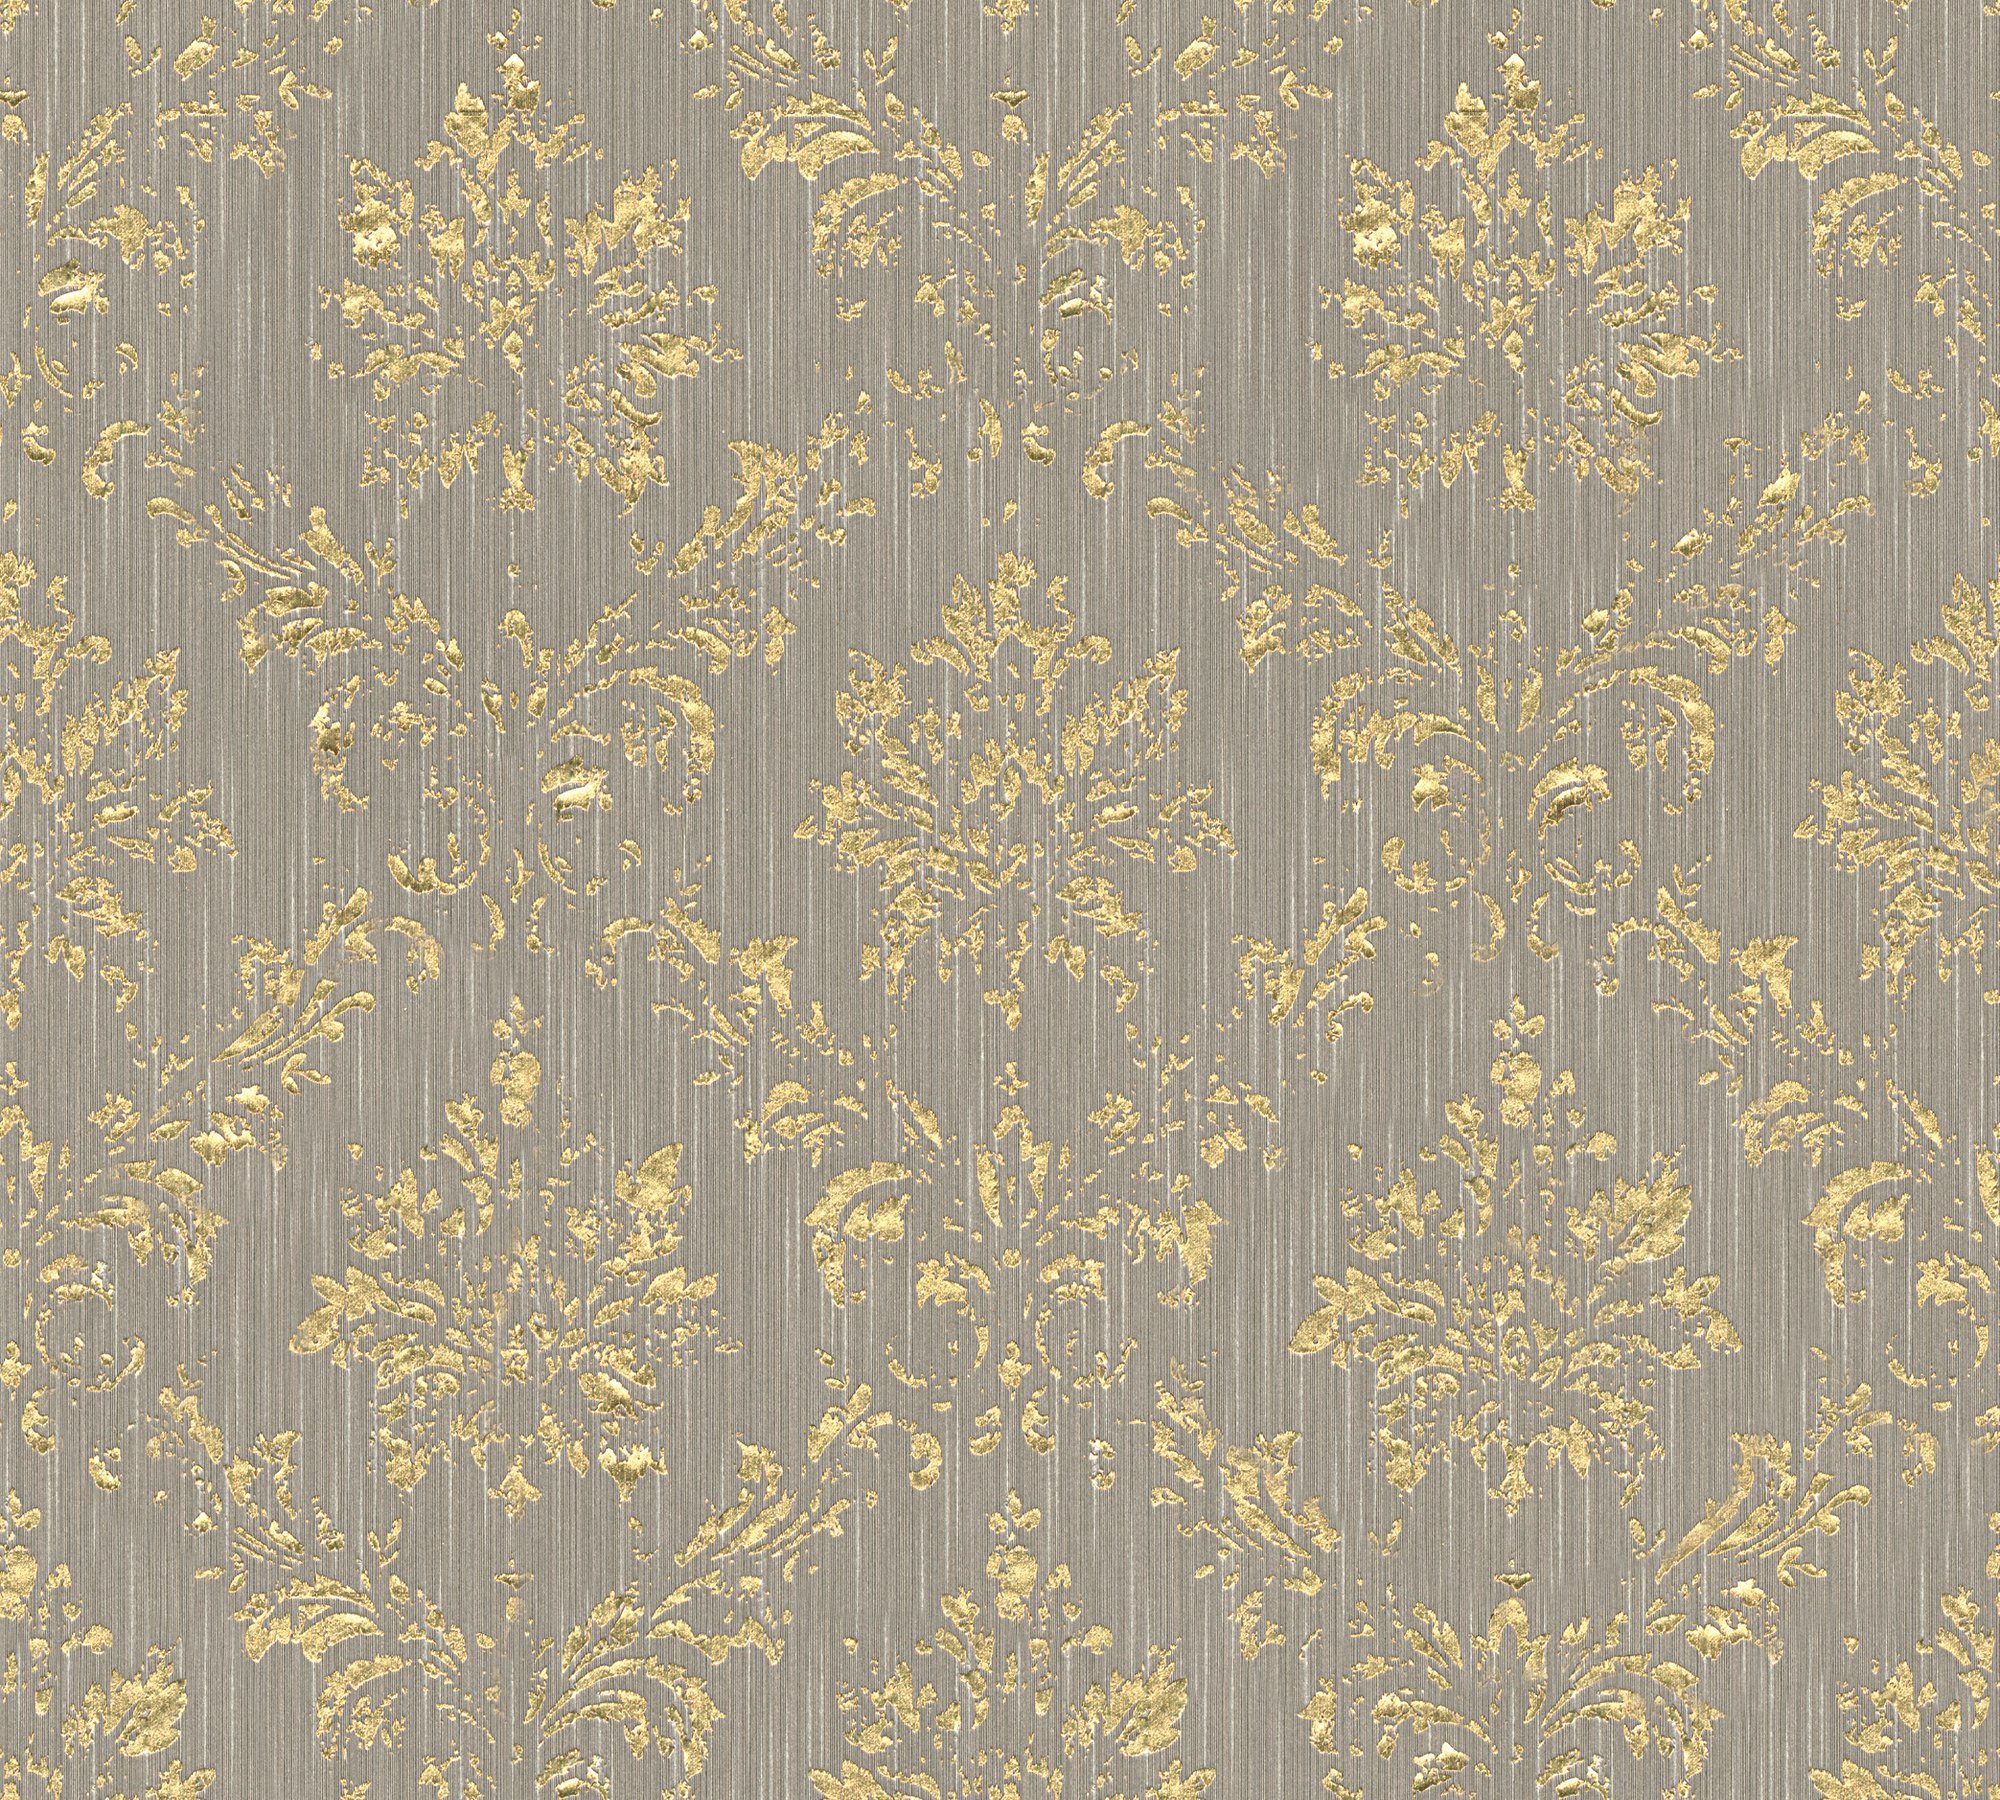 Barock, gold/beige Architects Ornament Textiltapete samtig, Paper Metallic Barock Silk, Création matt, glänzend, Tapete A.S.